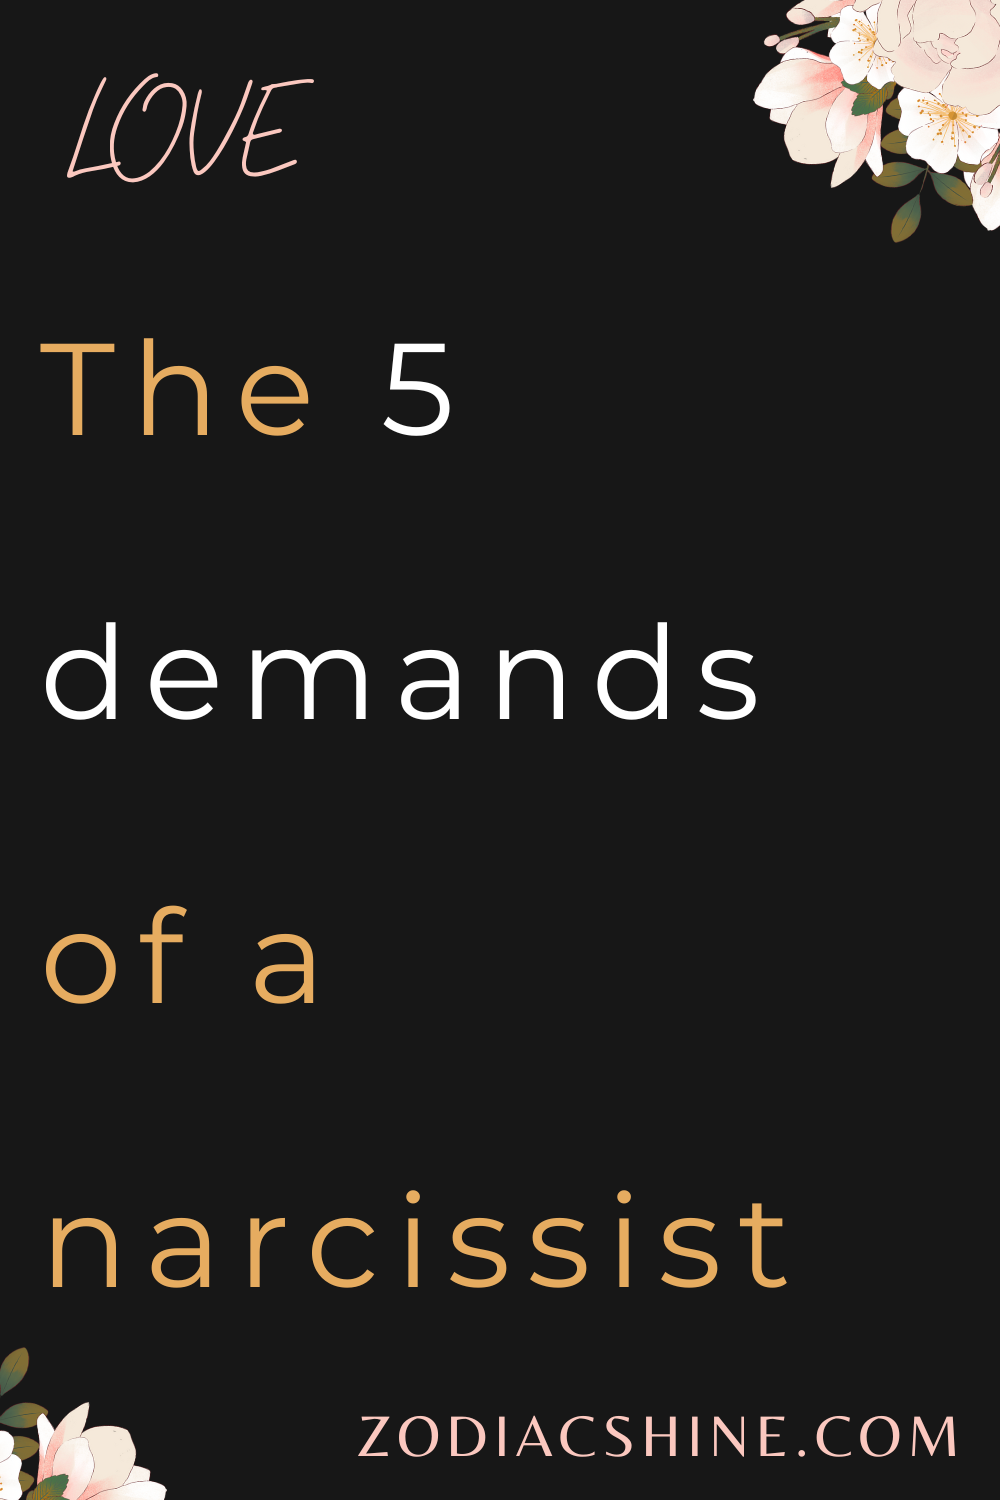 The 5 demands of a narcissist